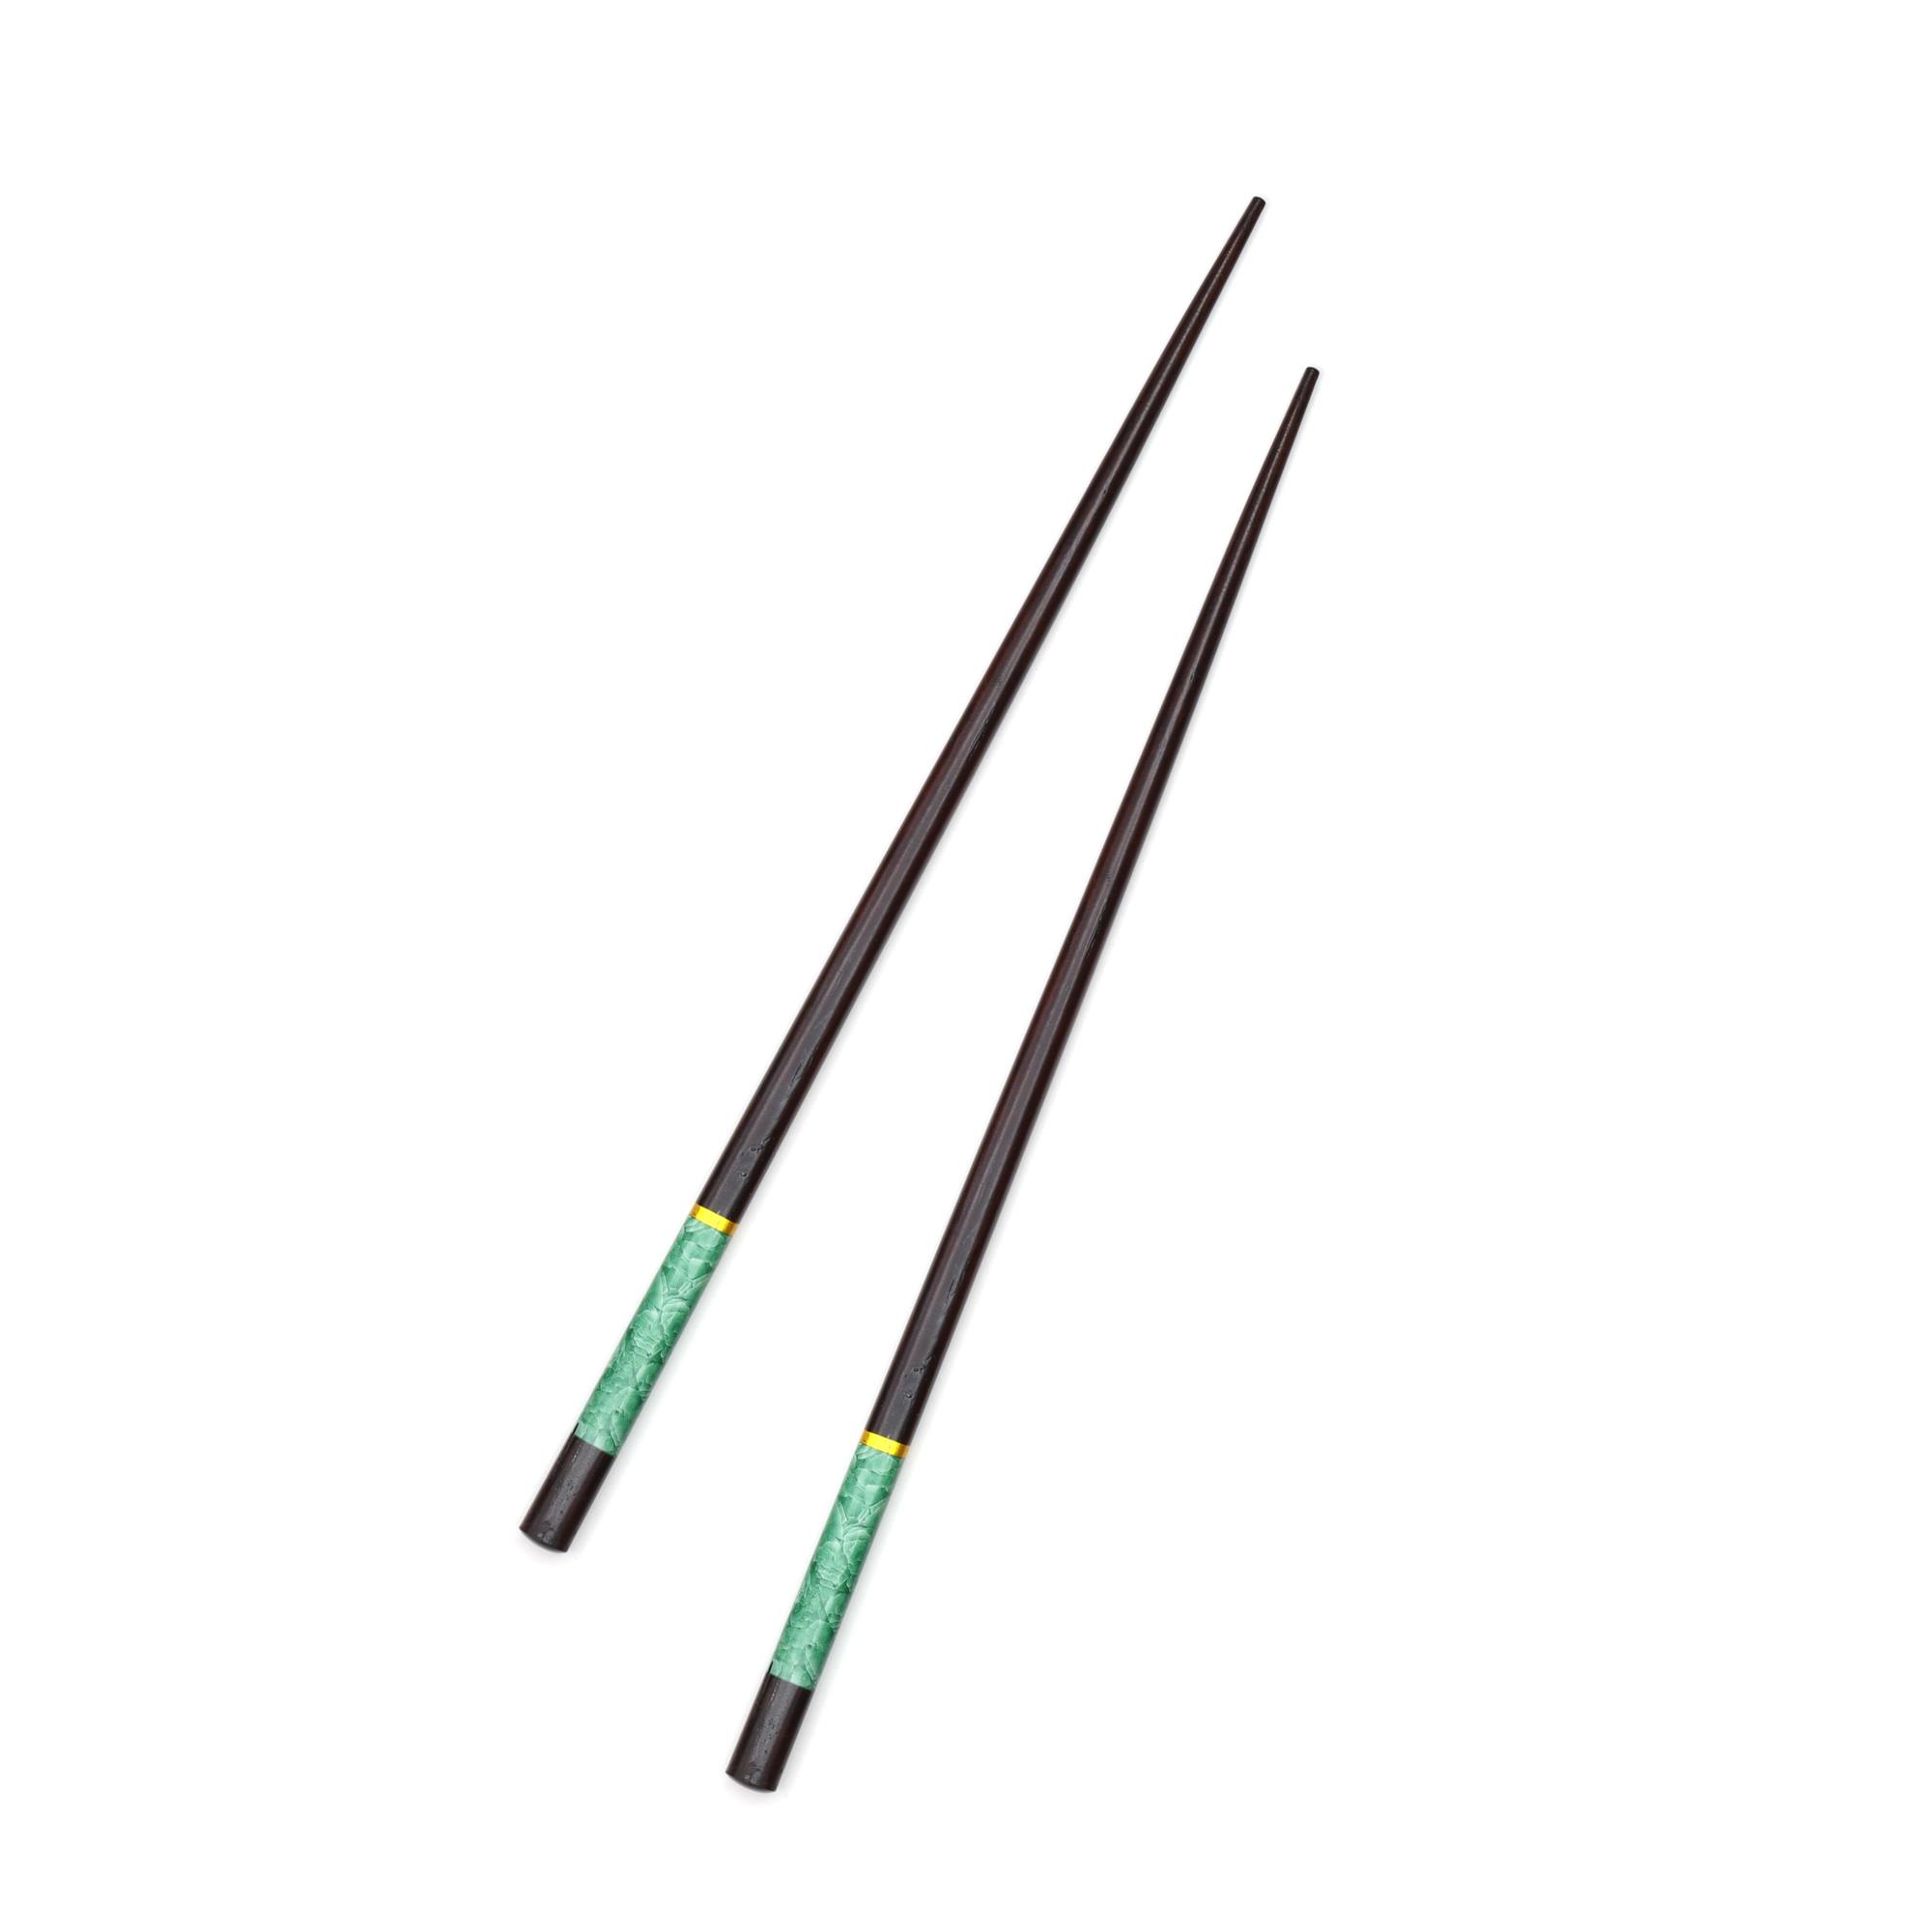 Çok Kullanımlık Bambu Çin Çubuğu (Chopsticks) Siyah-Yeşil Desenli 23 cm - 2 Adet